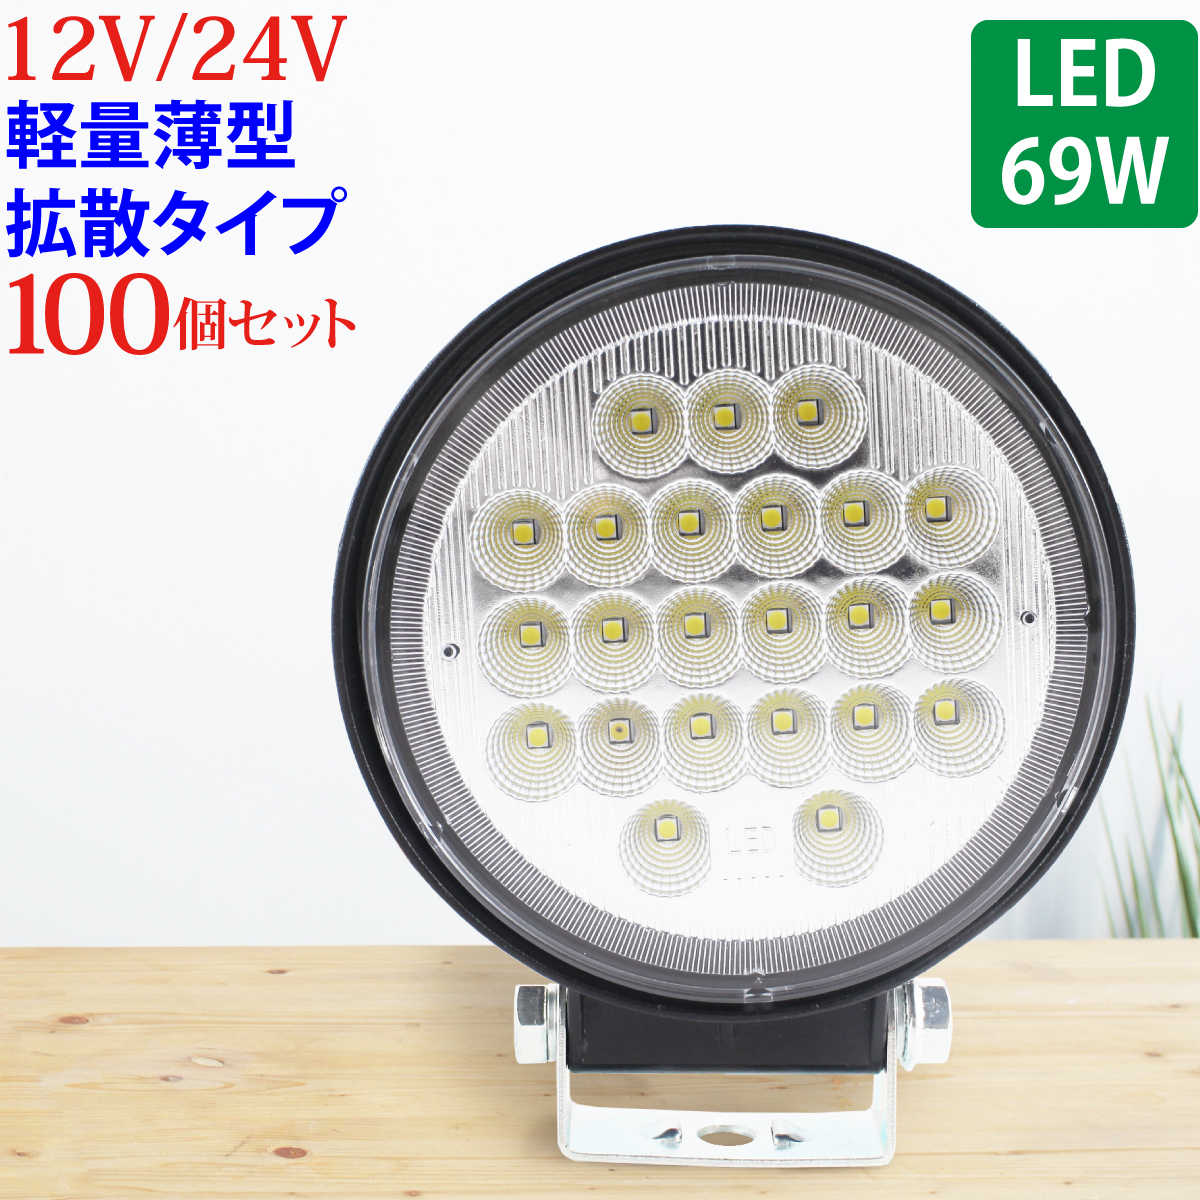 100個セット 作業灯 LED 69W 広範囲に明るい拡散タイプ 丸型 12V/24V 2530LM ホワイト 広角 IP65 ワークライト 防水 フォークリフ